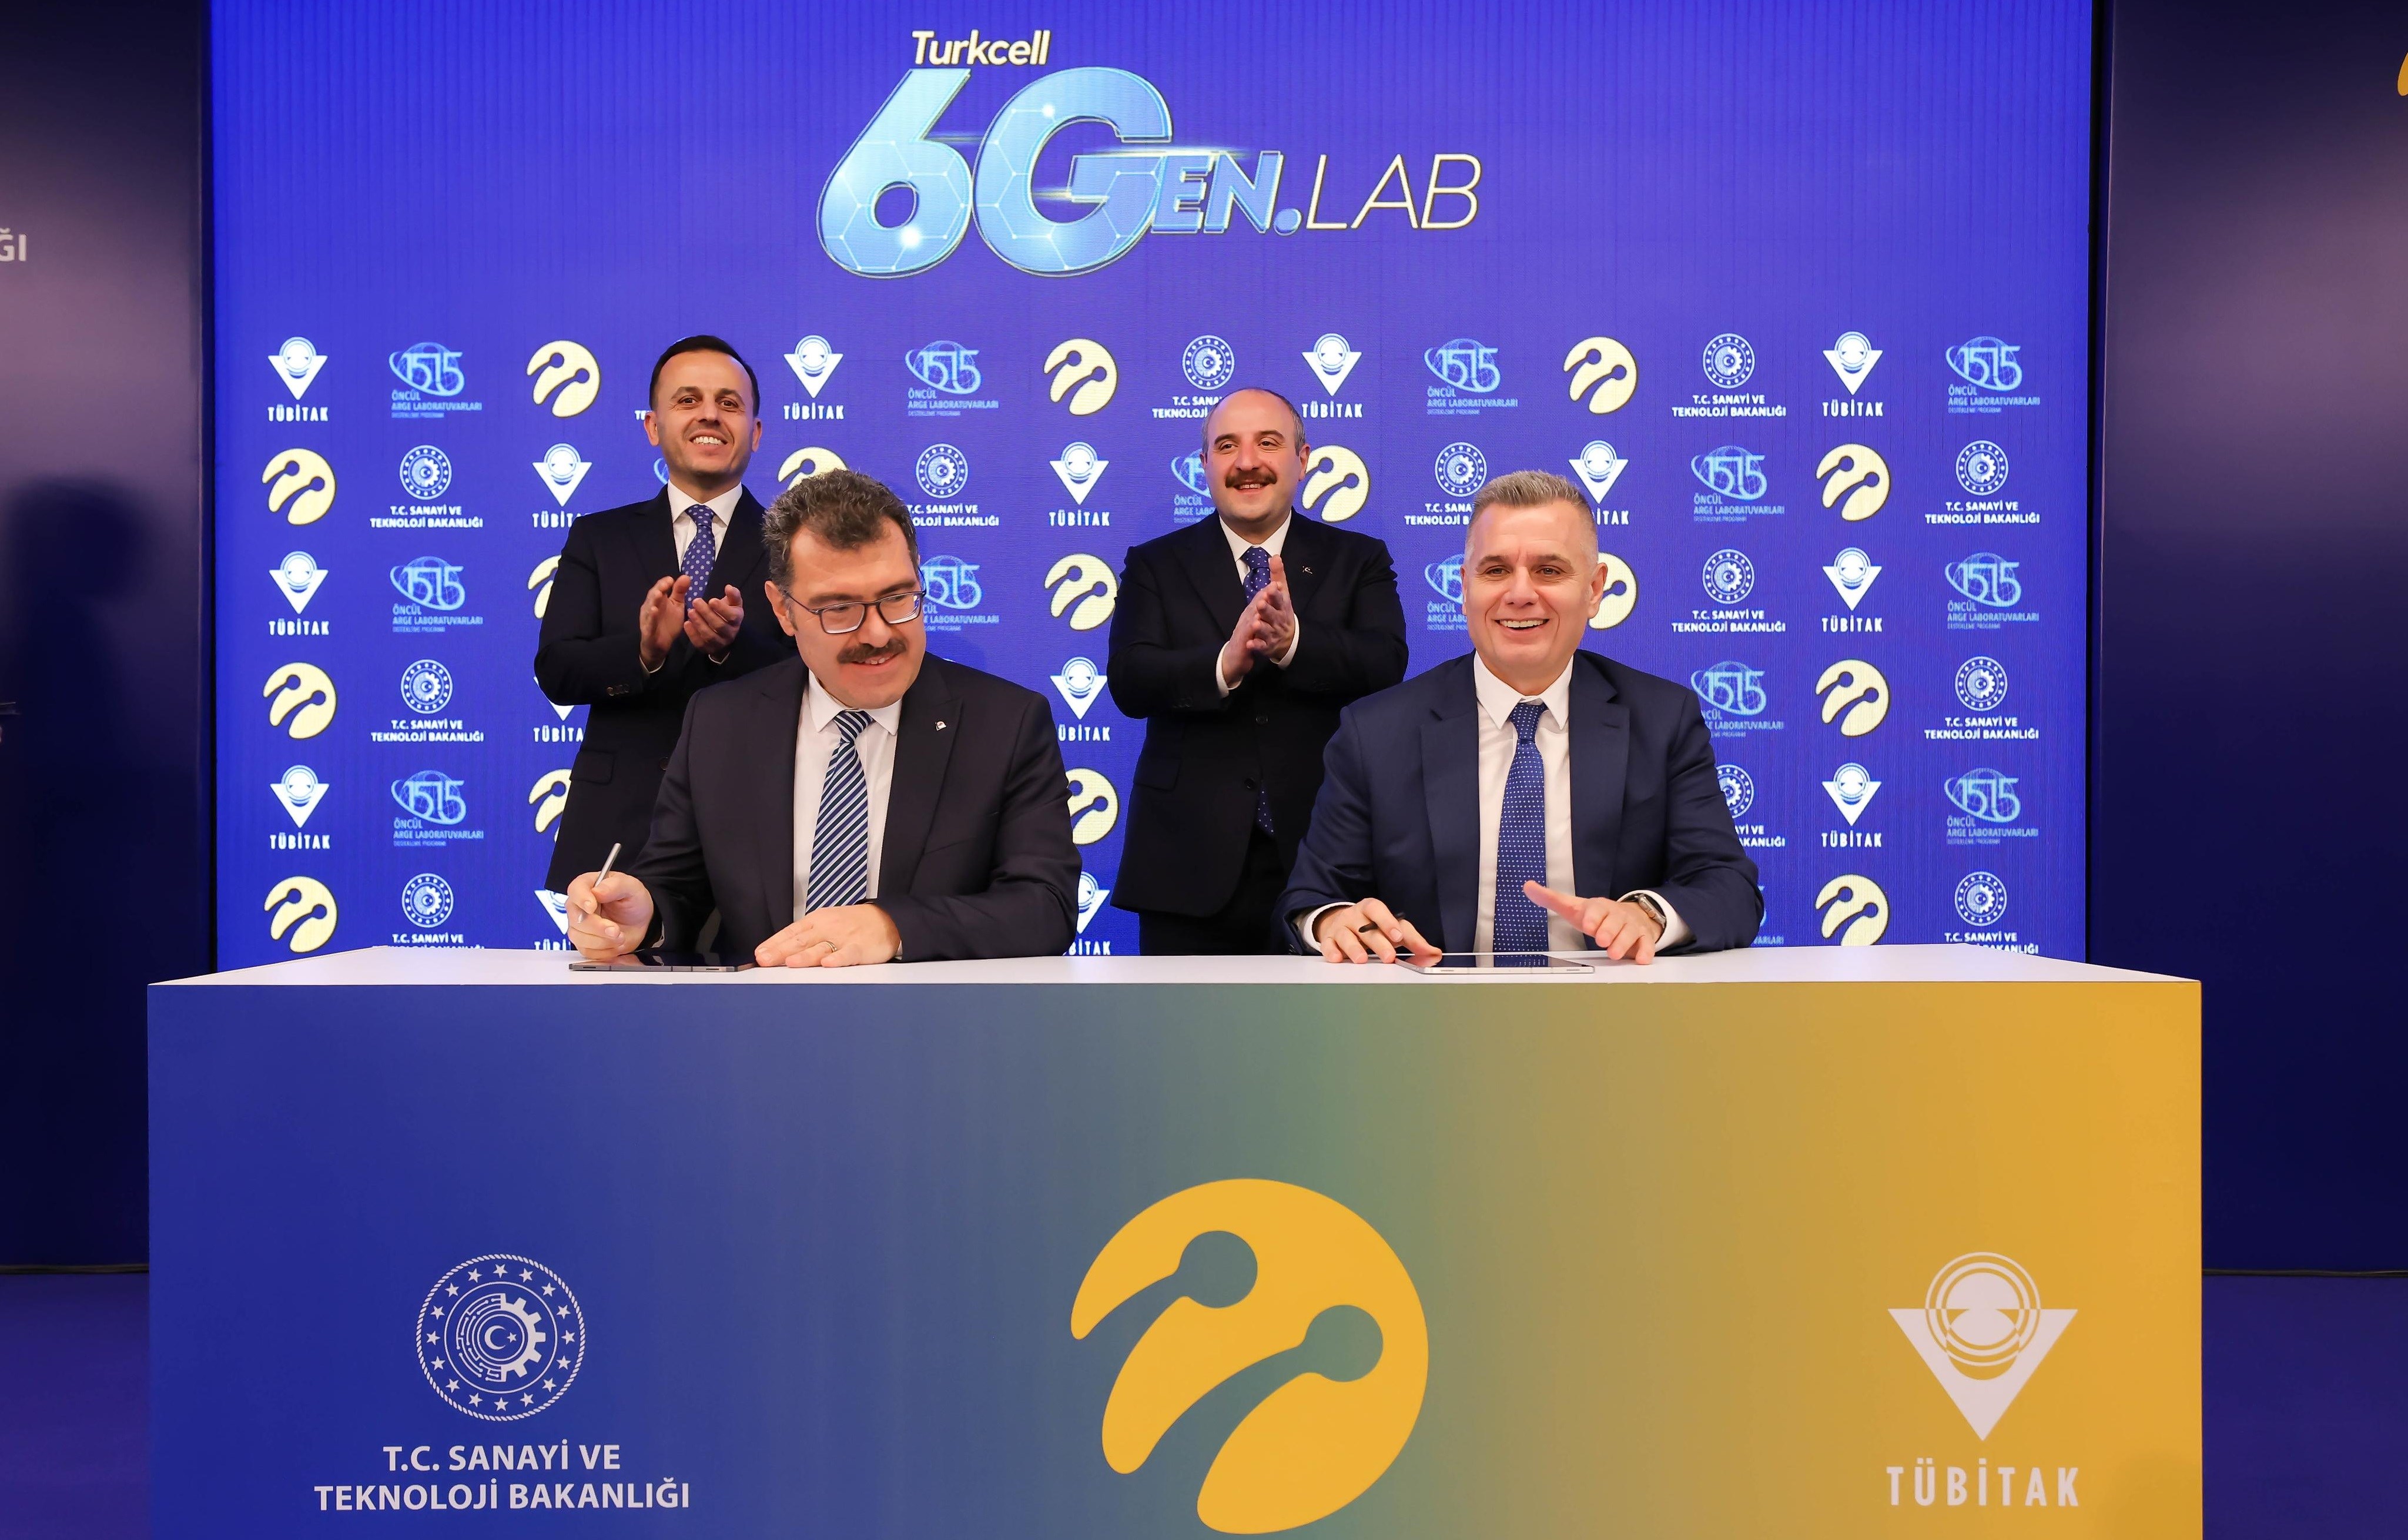 Turkcell 6GEN LAB'da yerli 6G çalışmaları yürütecek